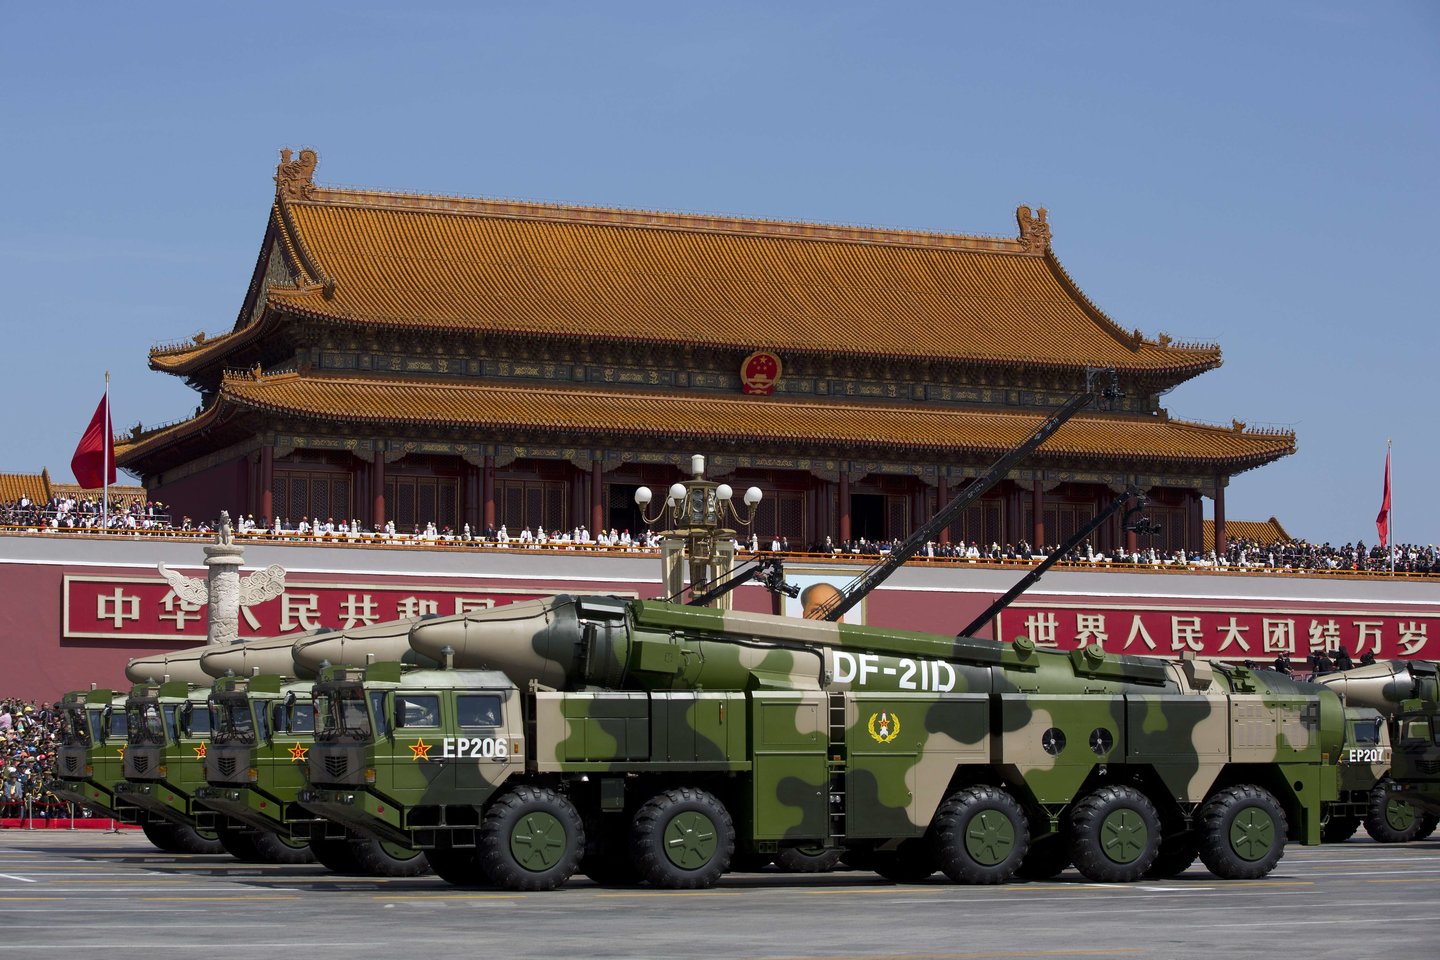  Kinijos valdžios pareigūnai artėjant birželio 4-ajai turi nemažai darbo. Jie prieš artėjančias 30-ąsias Tiananmenio aikštės žudynes užsiima cenzūros užtikrinimu ir suima visus grėsmę keliančius aktyvistus.<br> AFP/Scanpix nuotr.